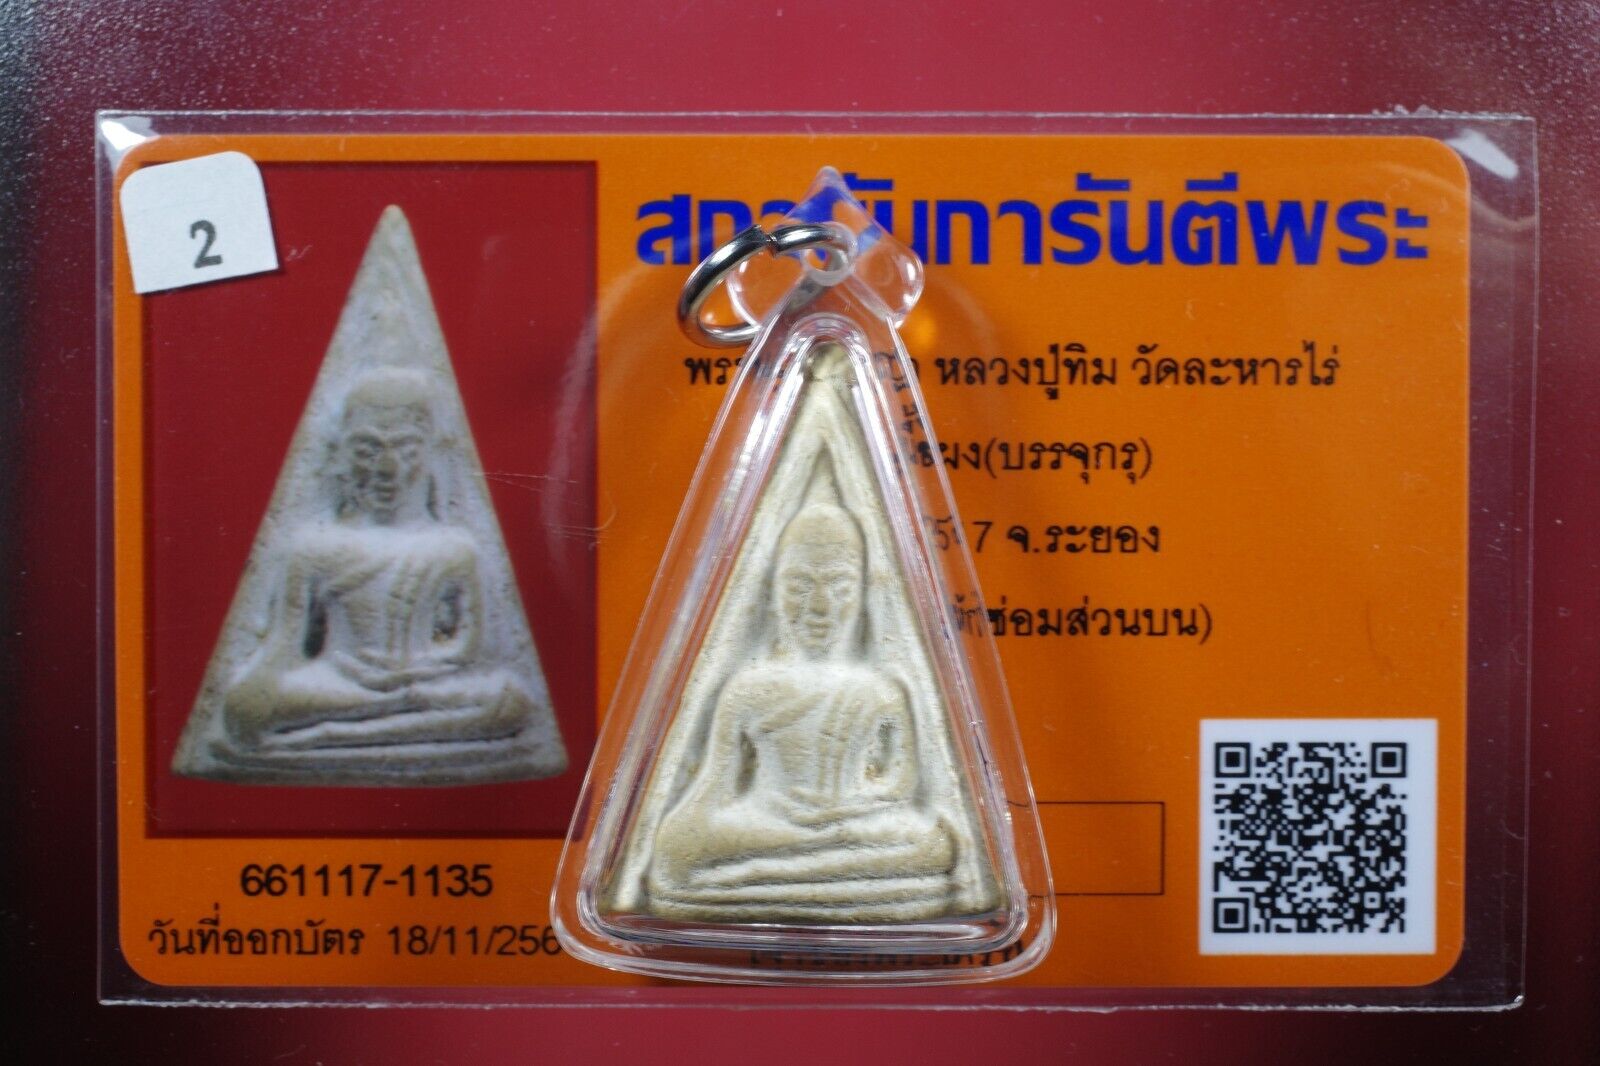 Phra Nang Phaya LP Tim ,Wat Rahanrai (BE.2517) Thai amulet Certificate &Card #3